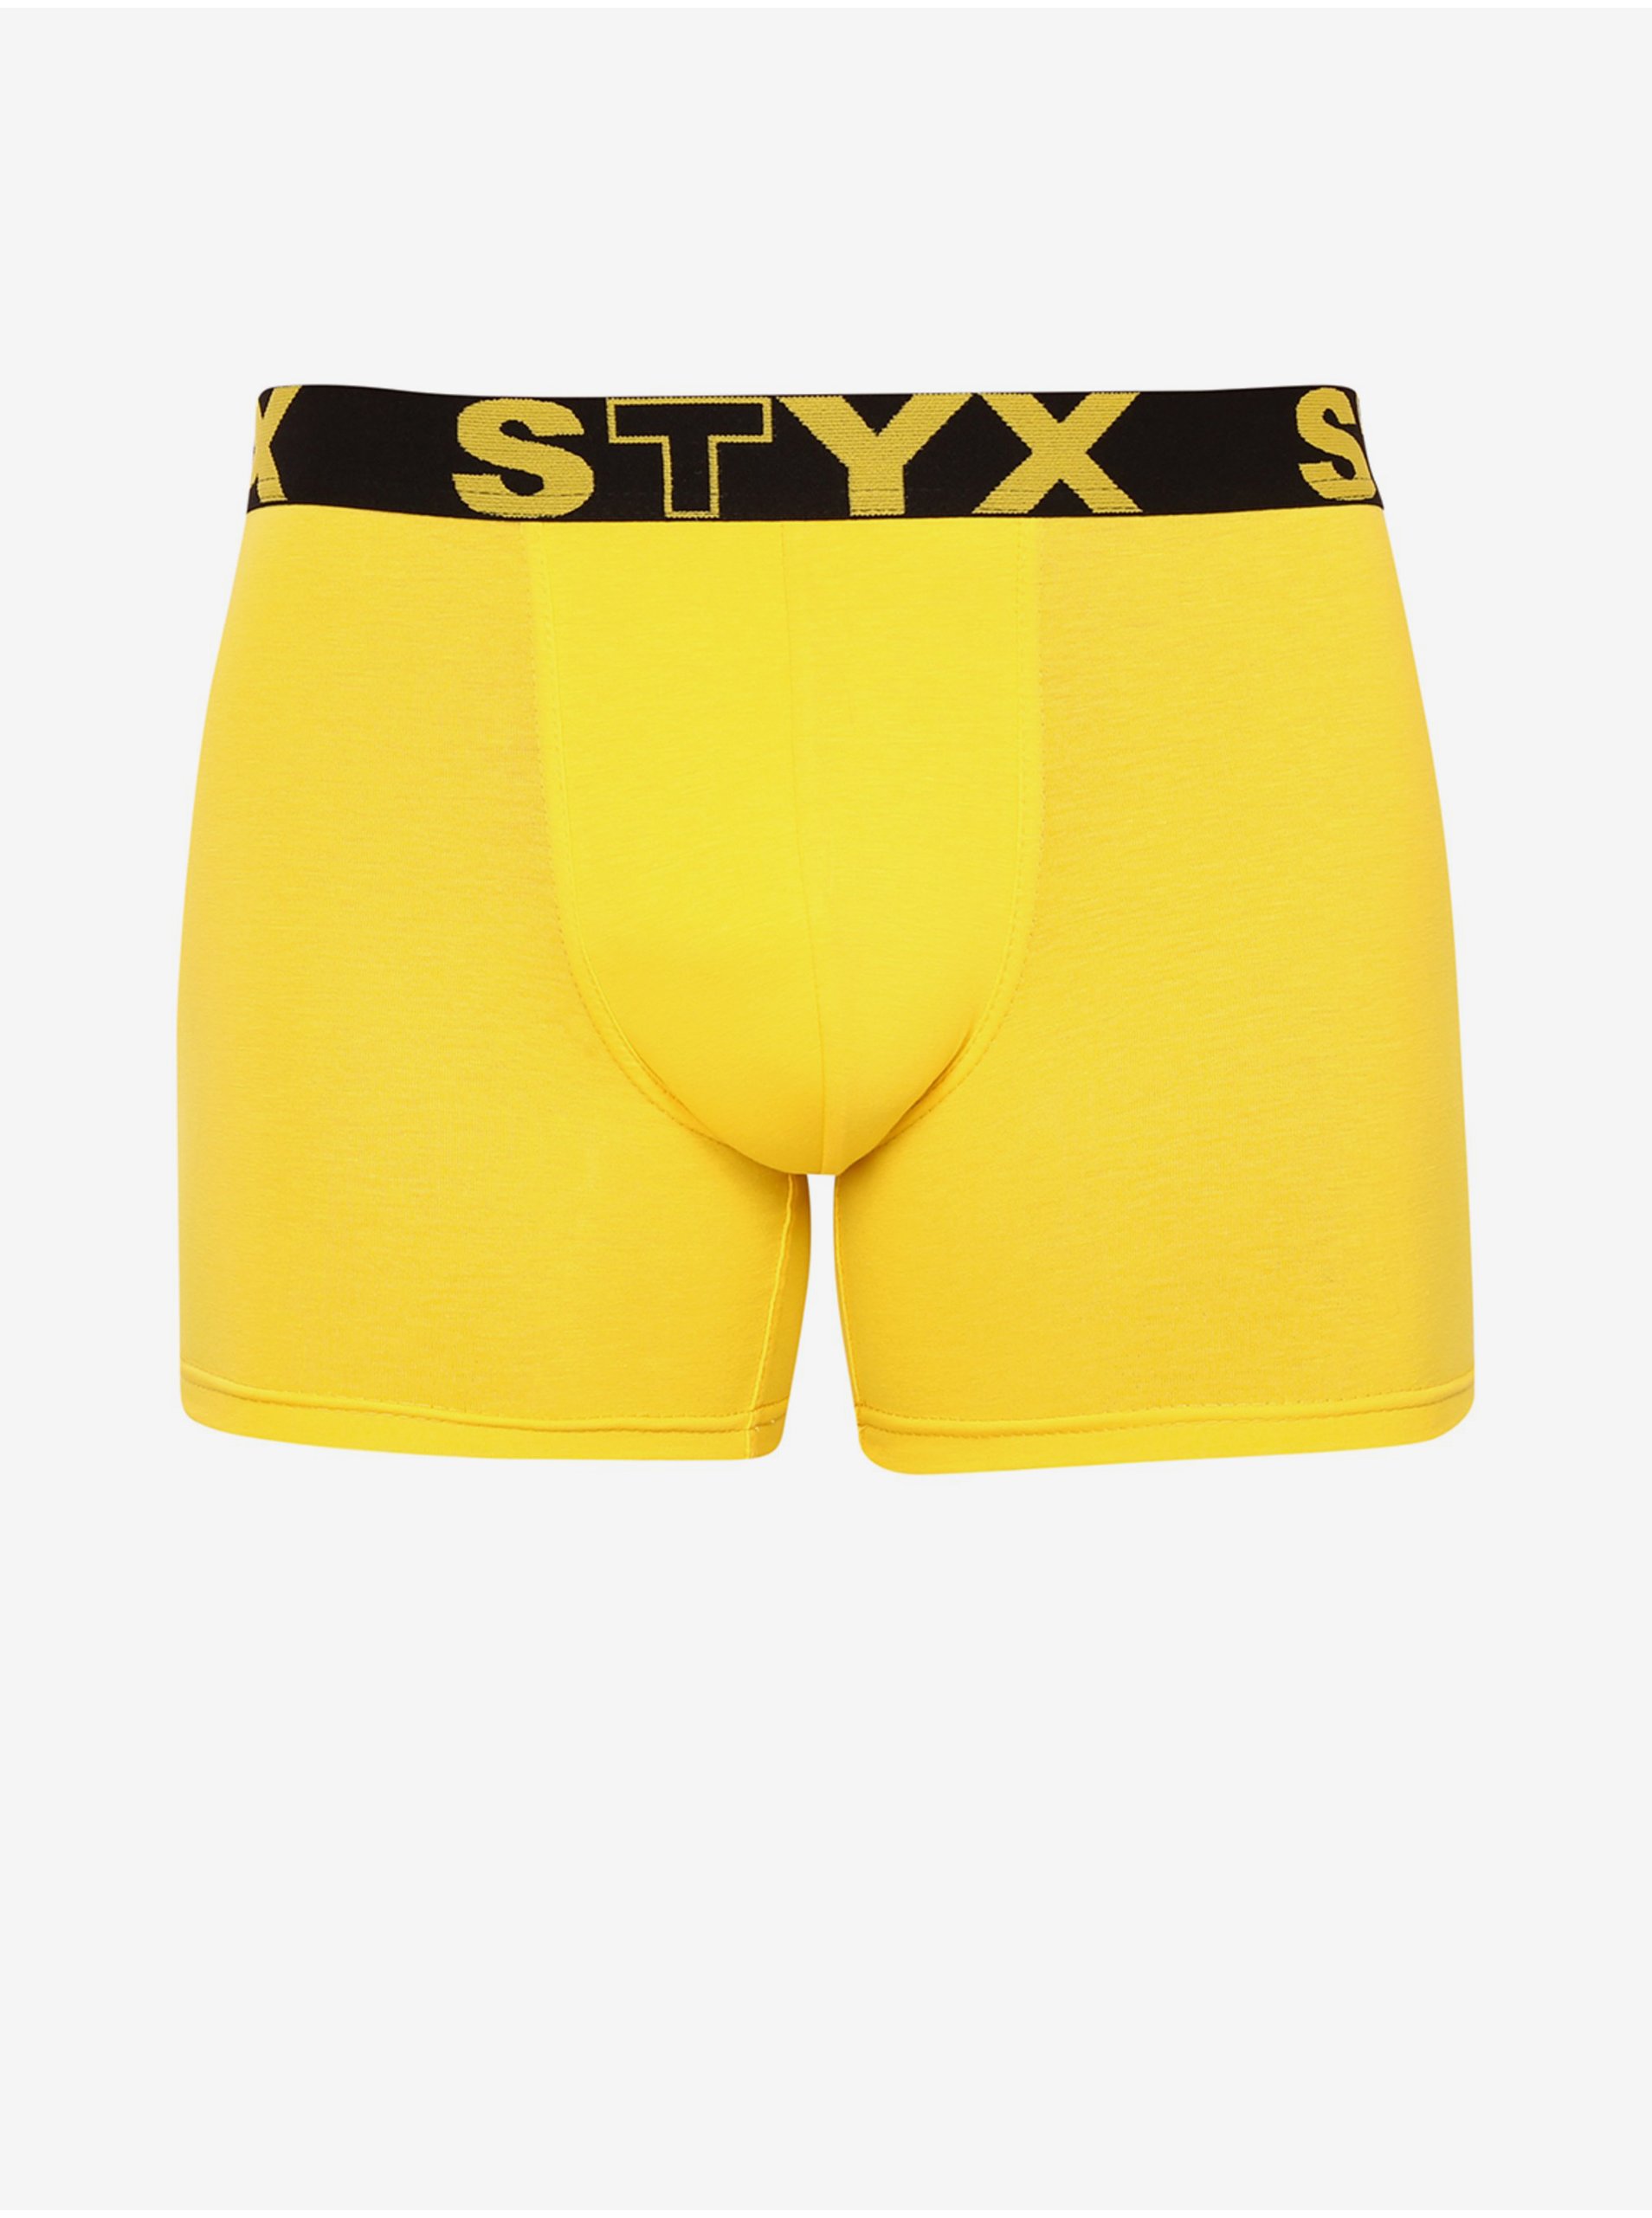 Lacno Boxerky pre mužov STYX - žltá, čierna